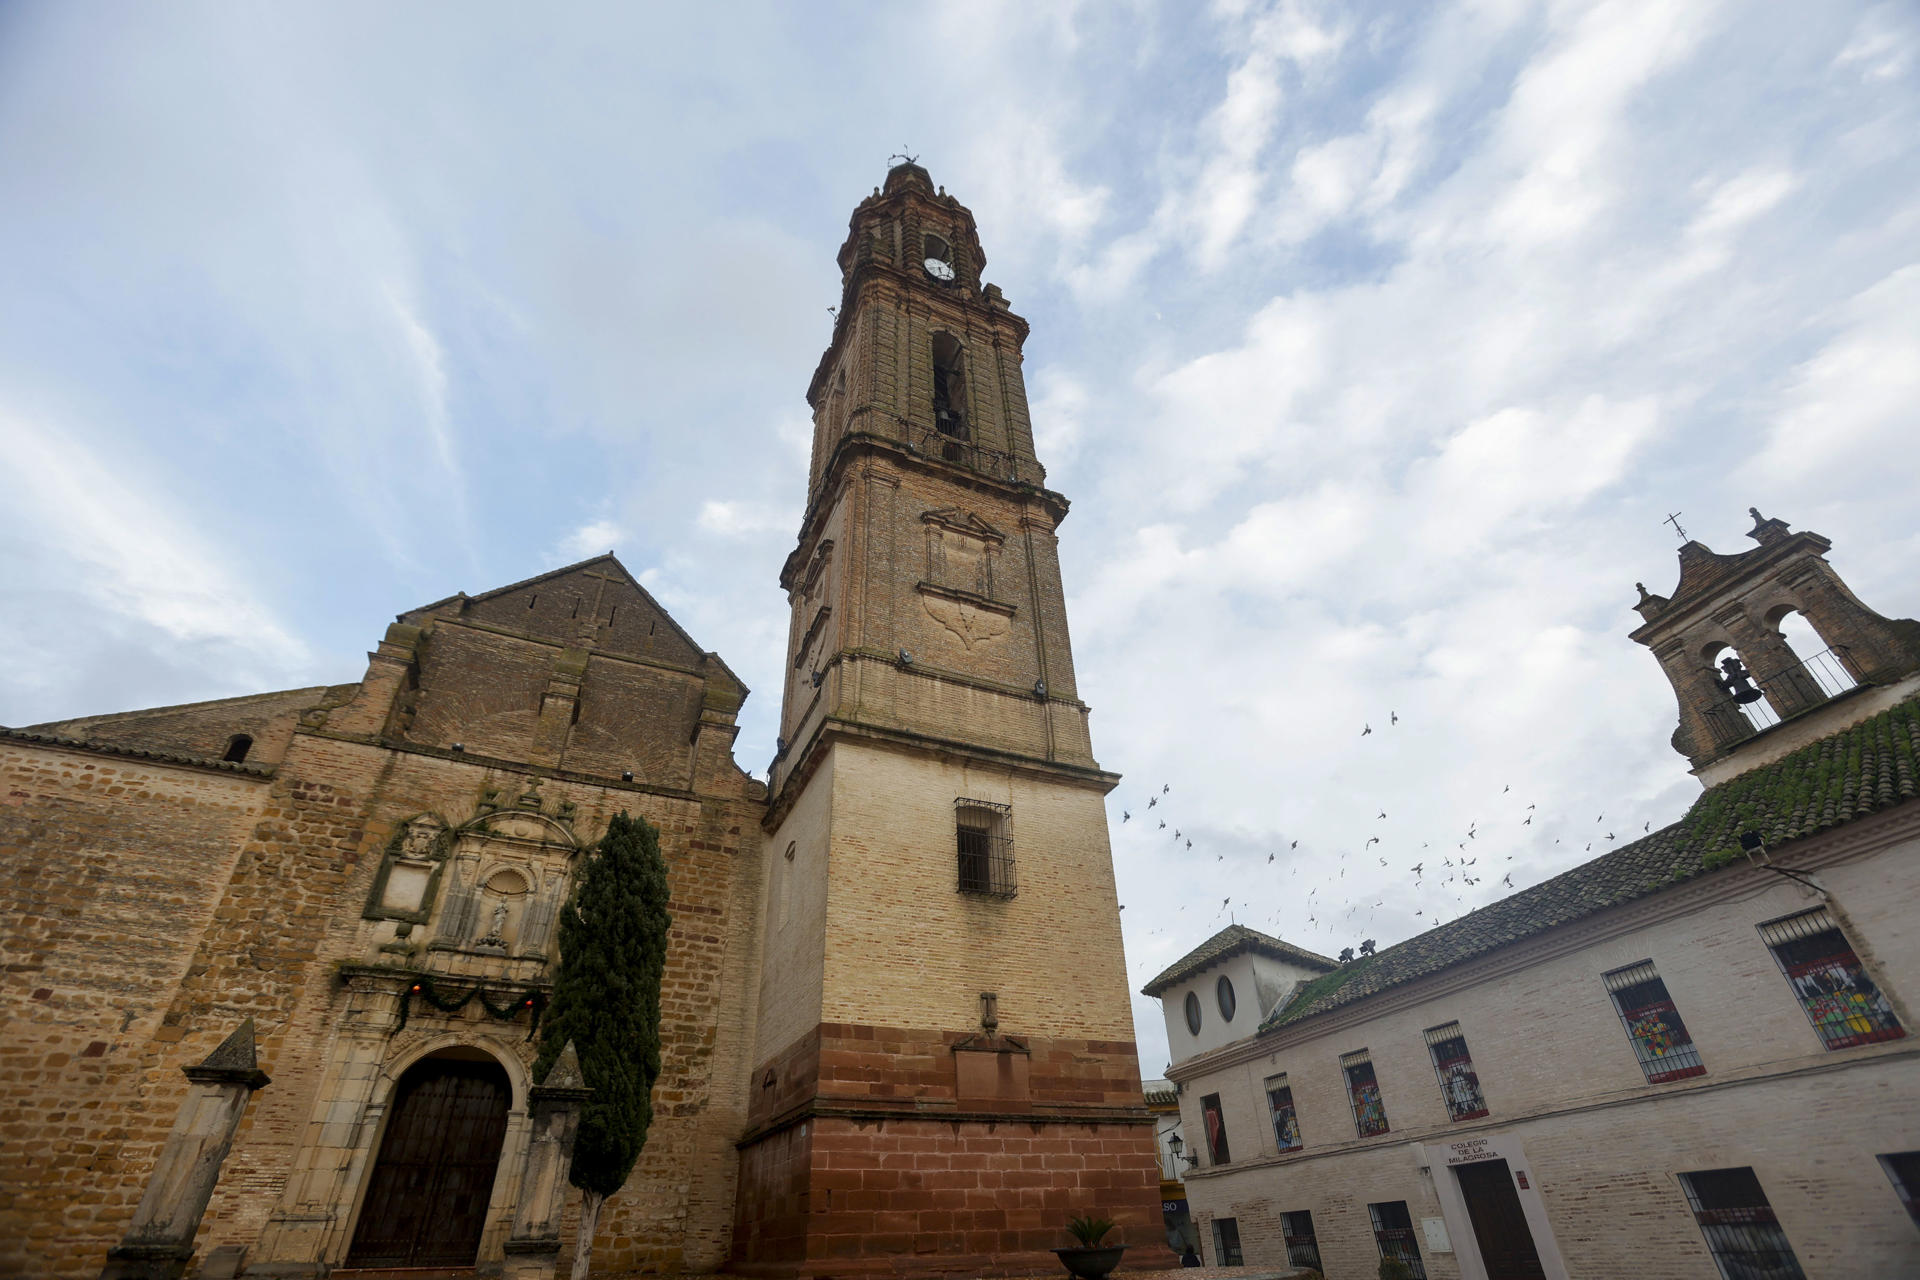 Vista de la torre inclinada de la Iglesia de la Asunción en la localidad cordobesa de Bujalance y la más alta de toda la provincia, cuya desviación en su parte superior la ha hecho ganarse el sobrenombre de la 'Torre de Pisa' andaluza. EFE/Salas
